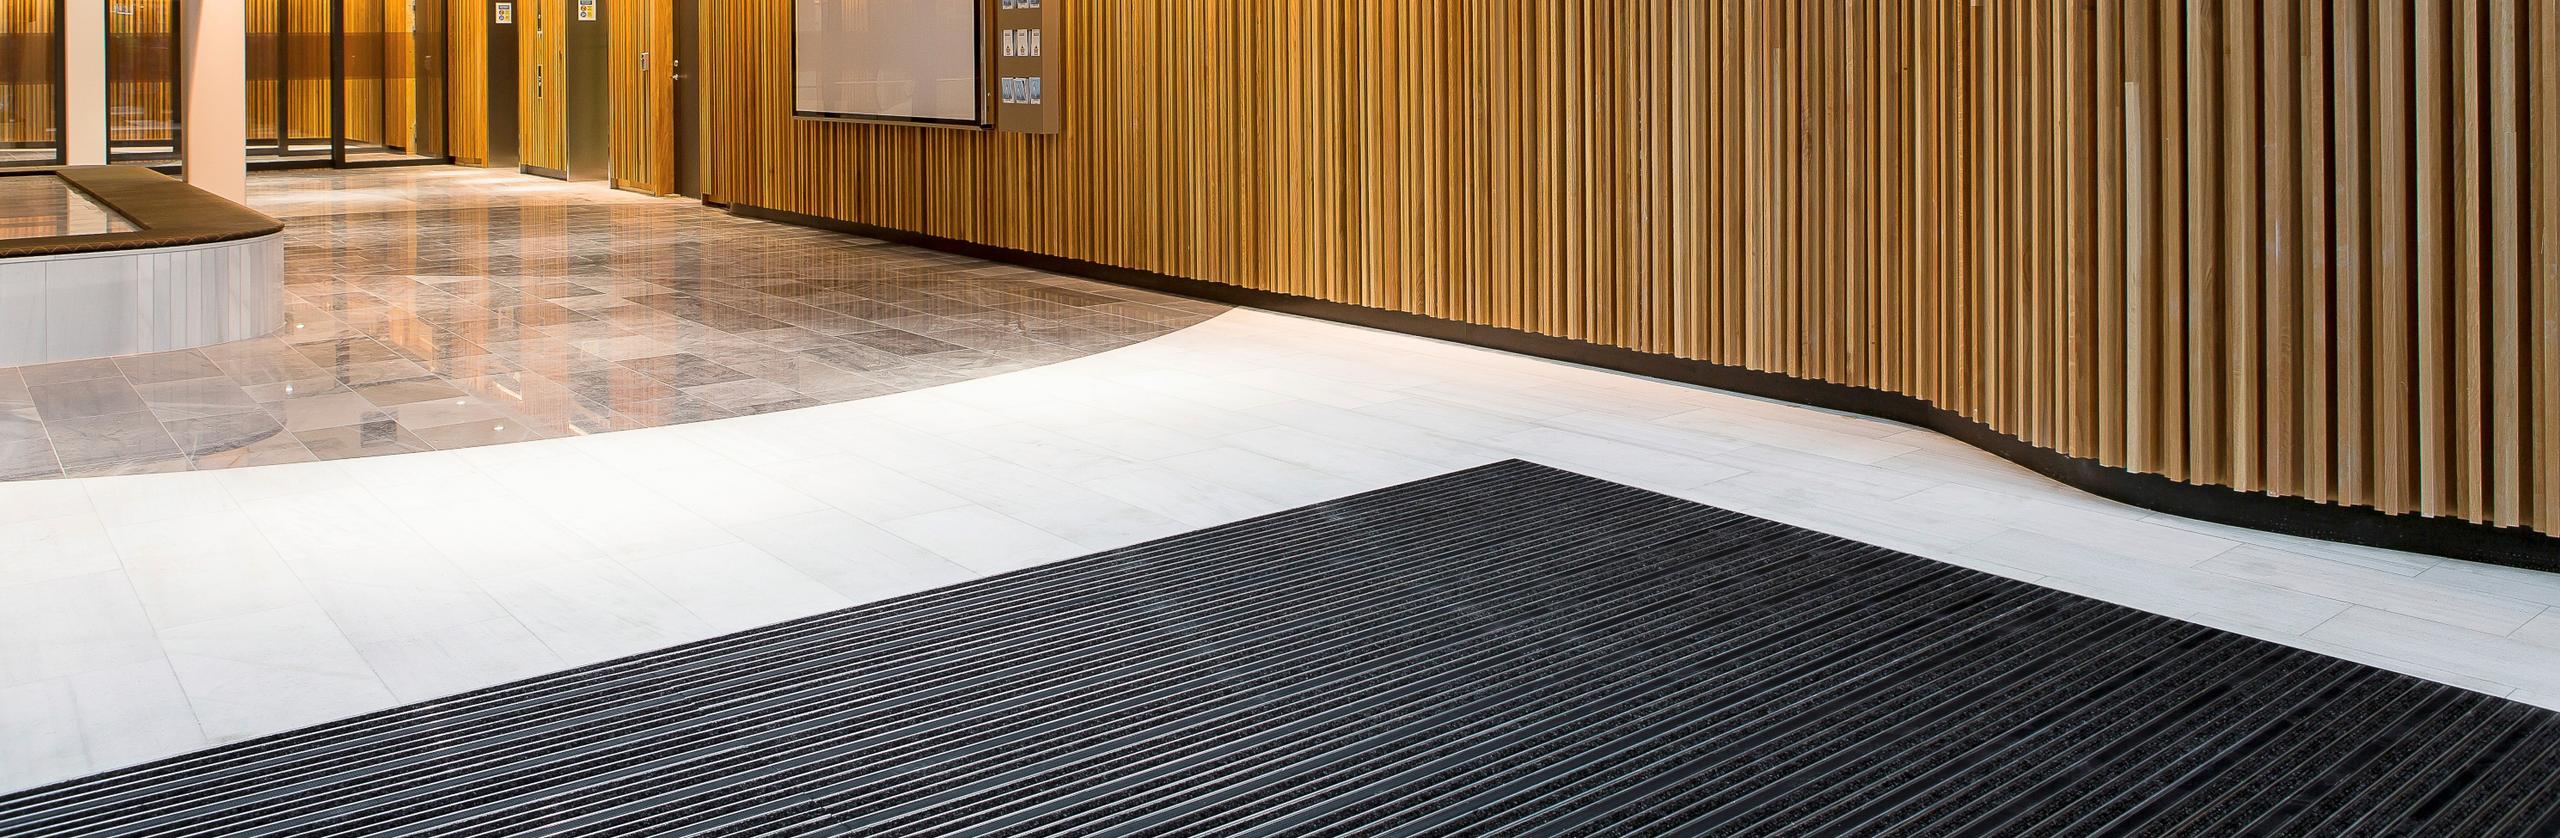 Commercial entrance matting render